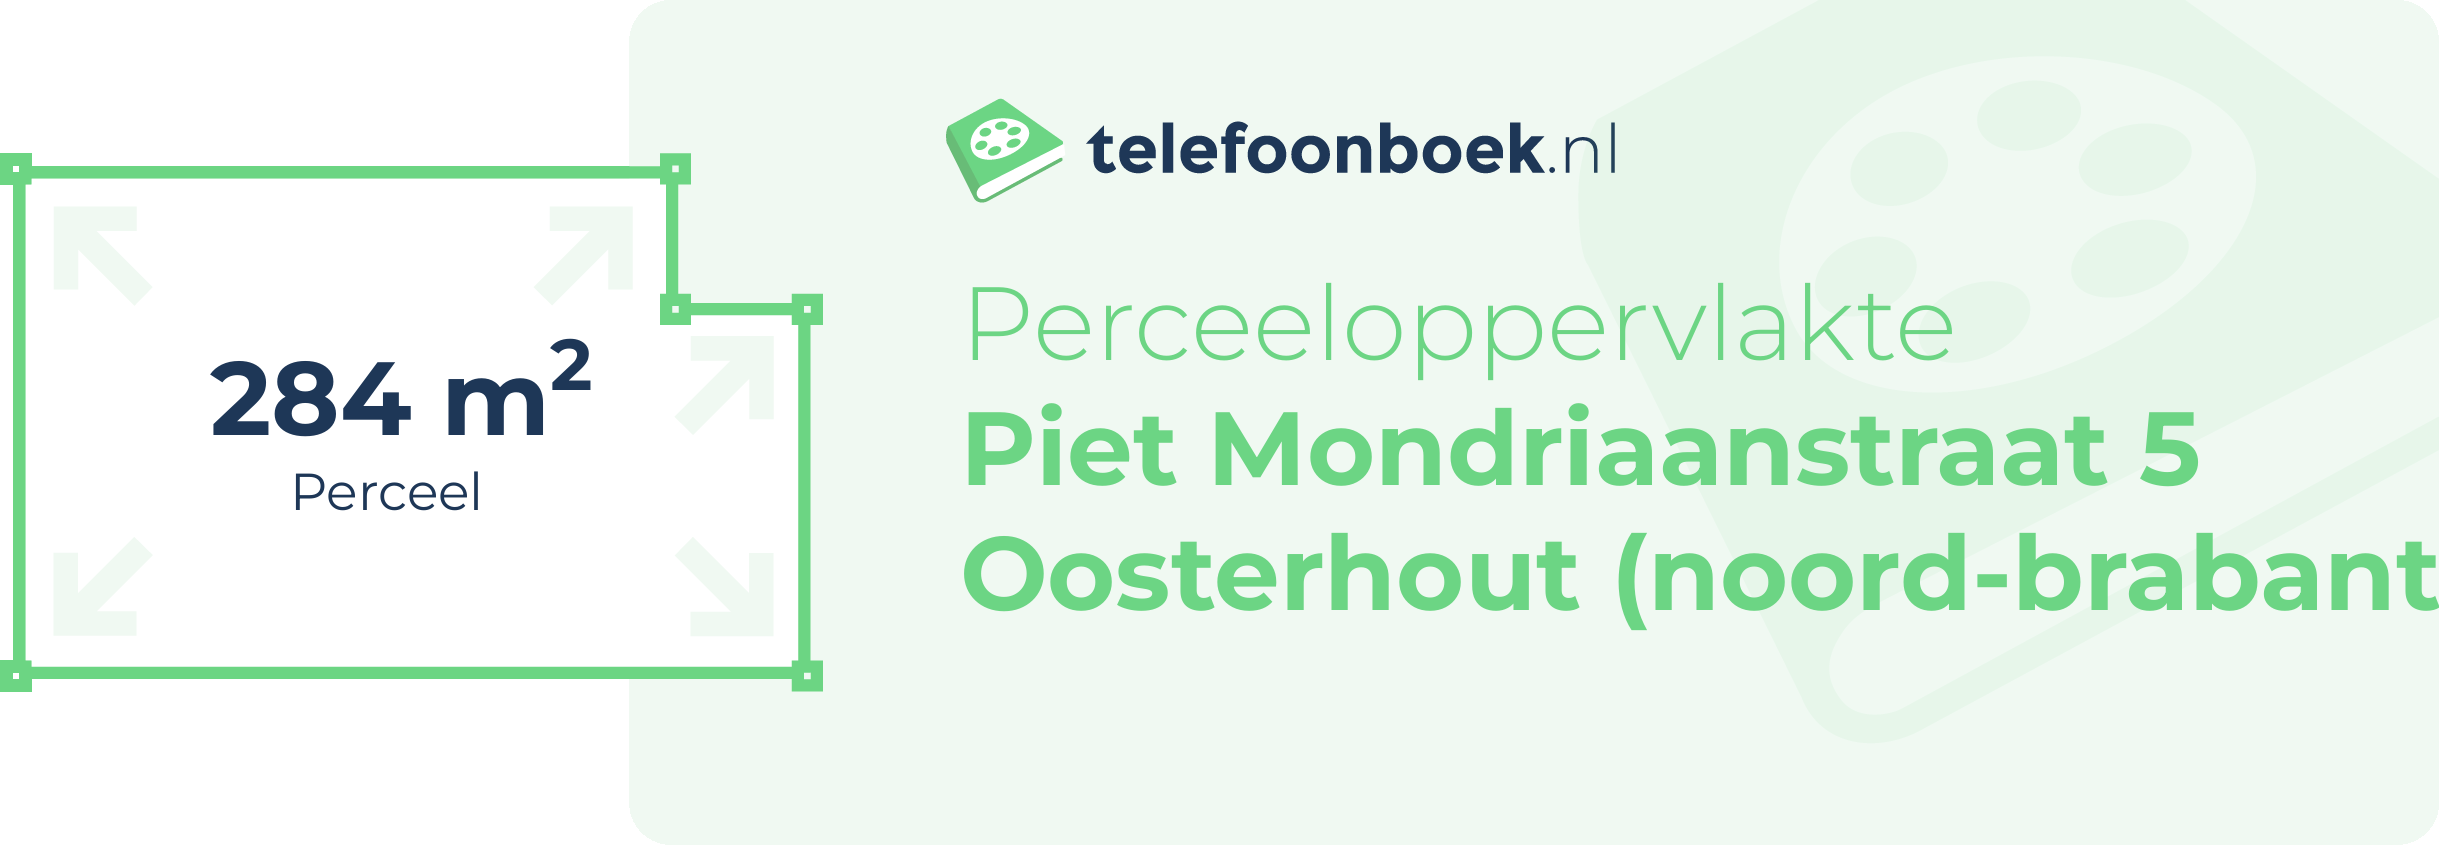 Perceeloppervlakte Piet Mondriaanstraat 5 Oosterhout (Noord-Brabant)